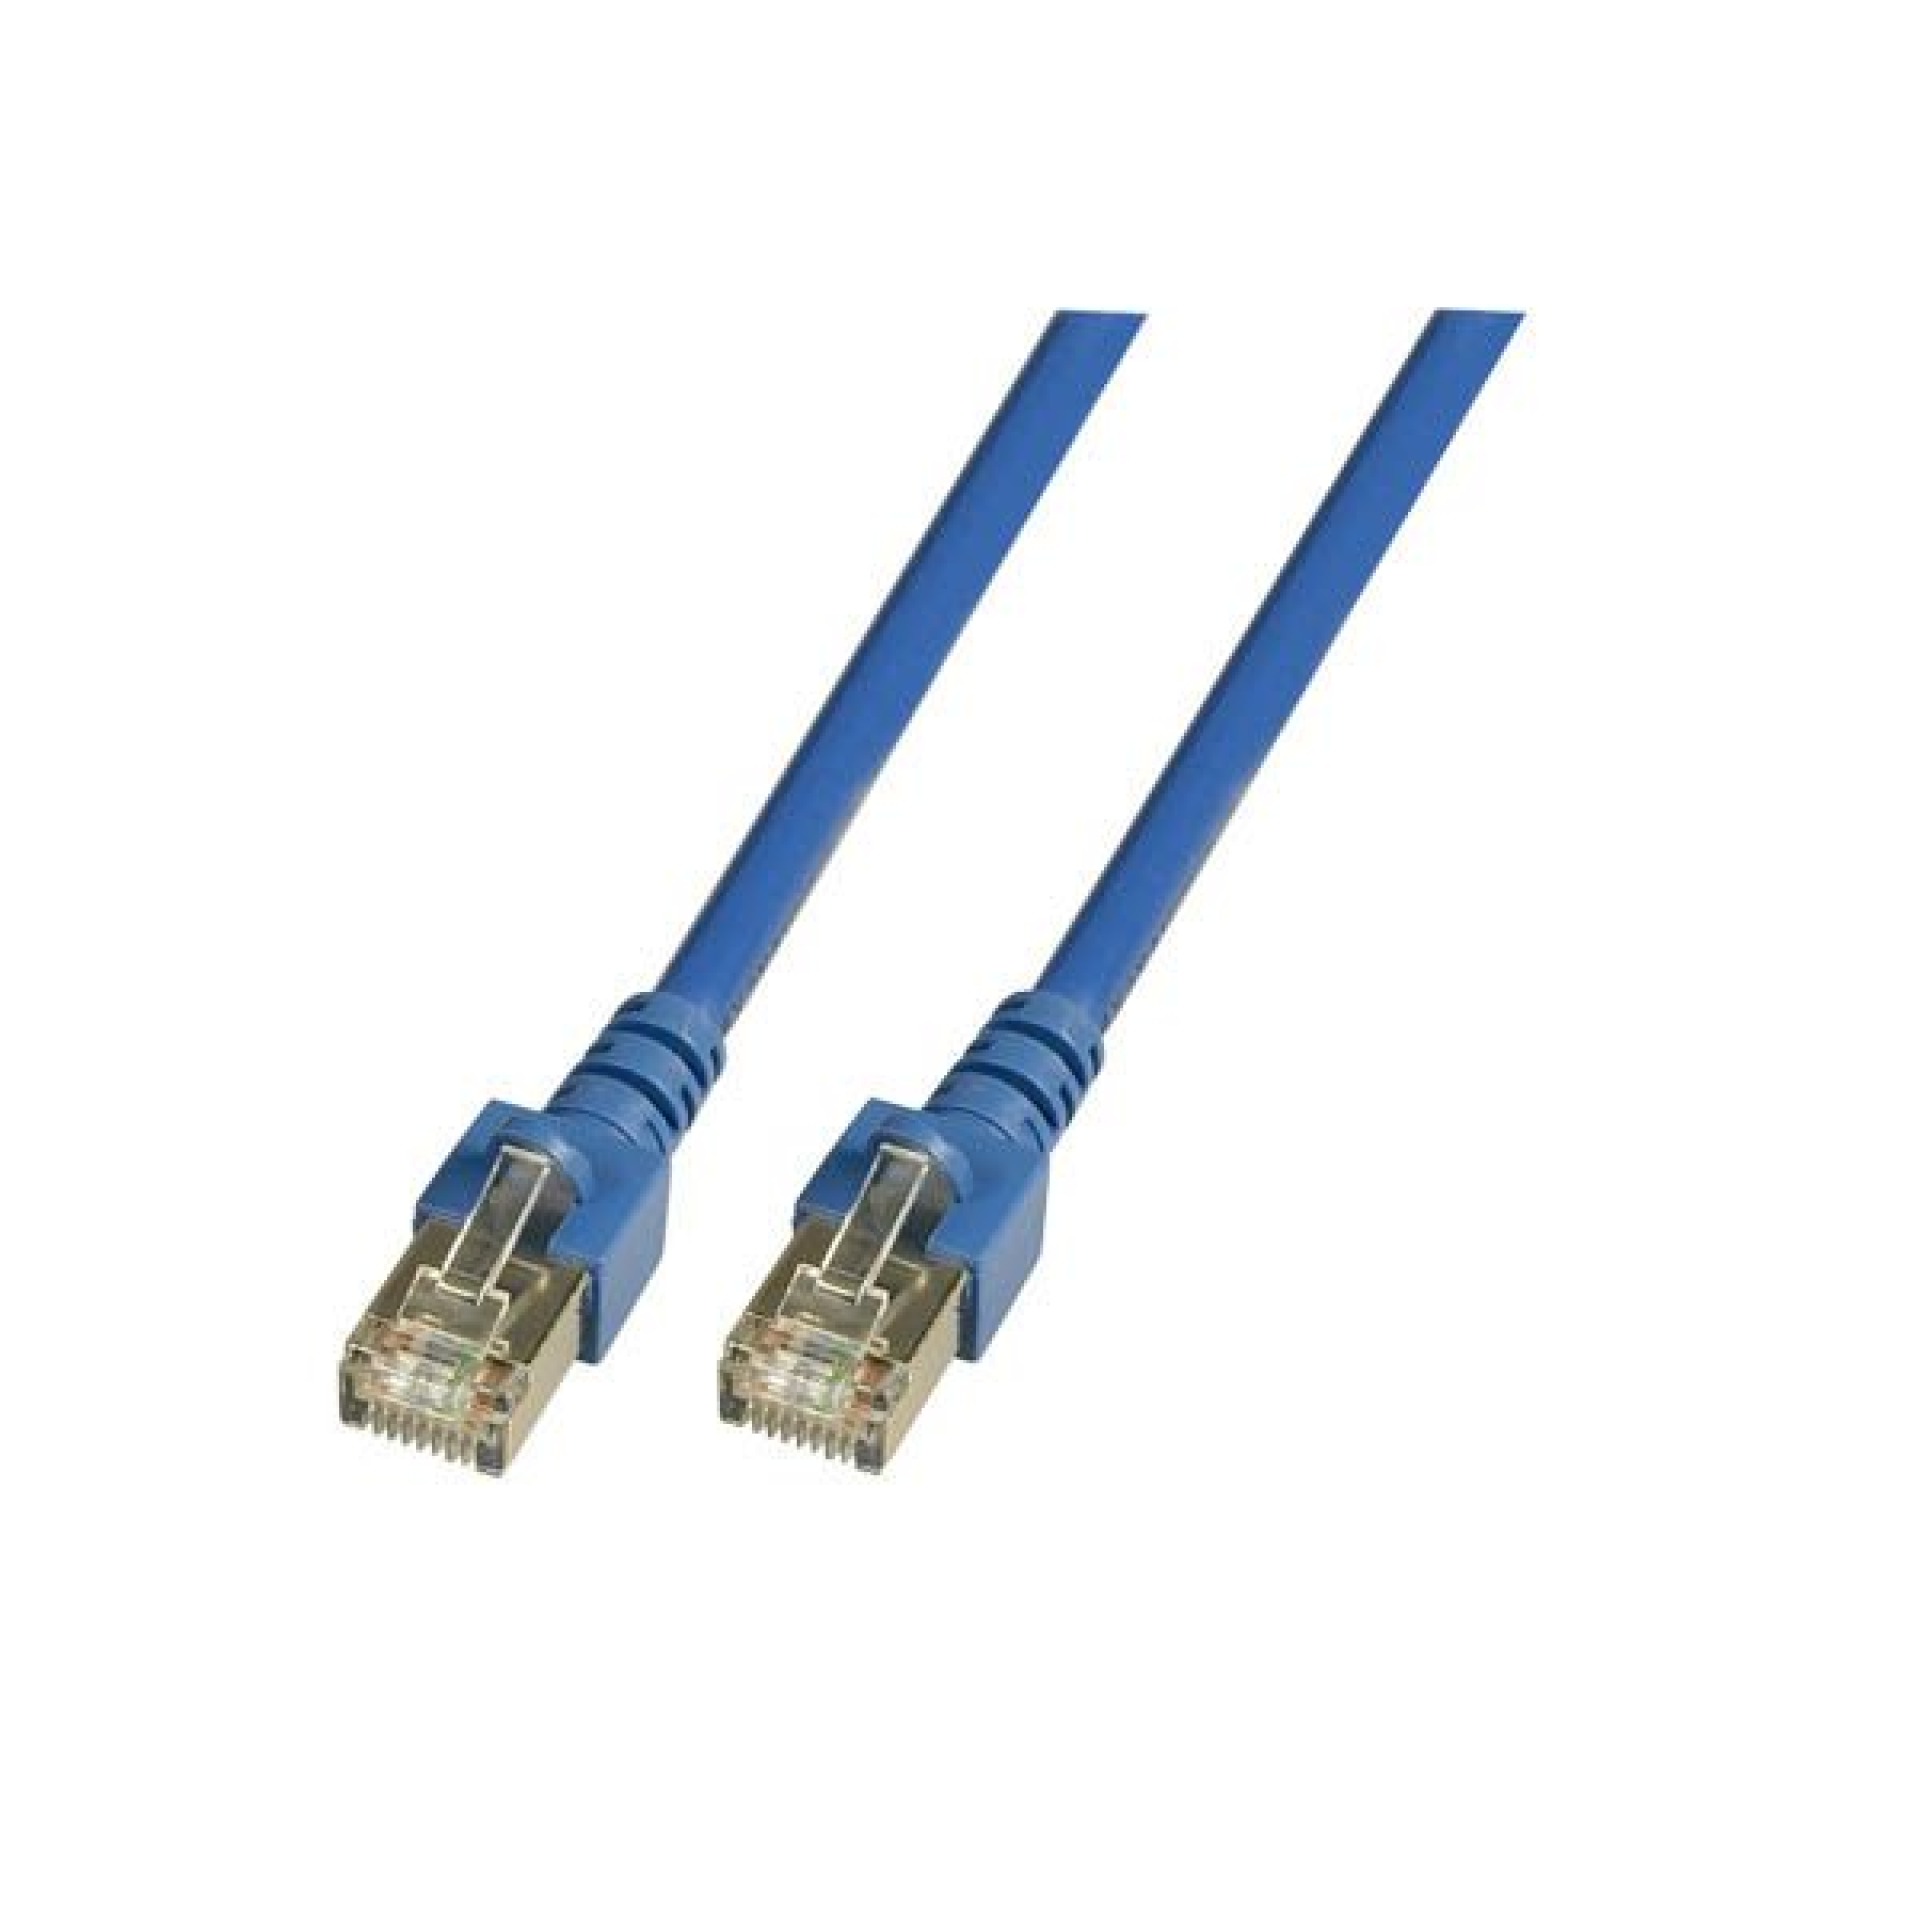 RJ45 Patch cable SF/UTP, Cat.5e, PVC, CCA, 2m, blue